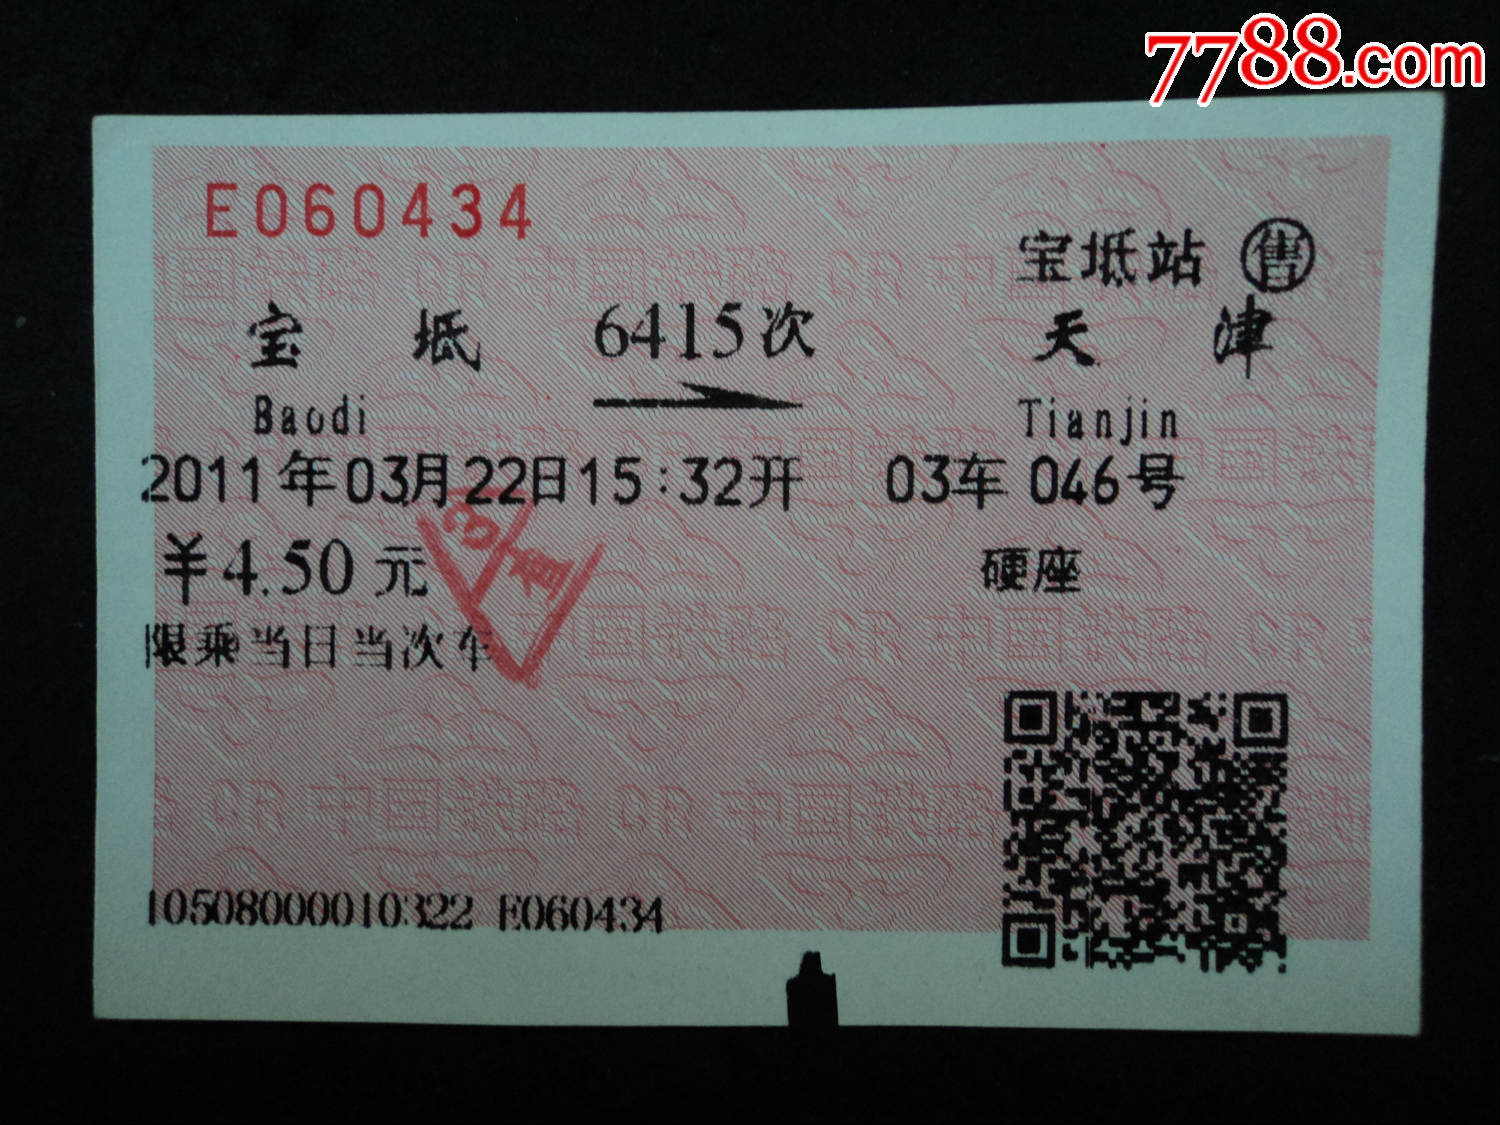 软纸火车票--宝坻到天津6415次